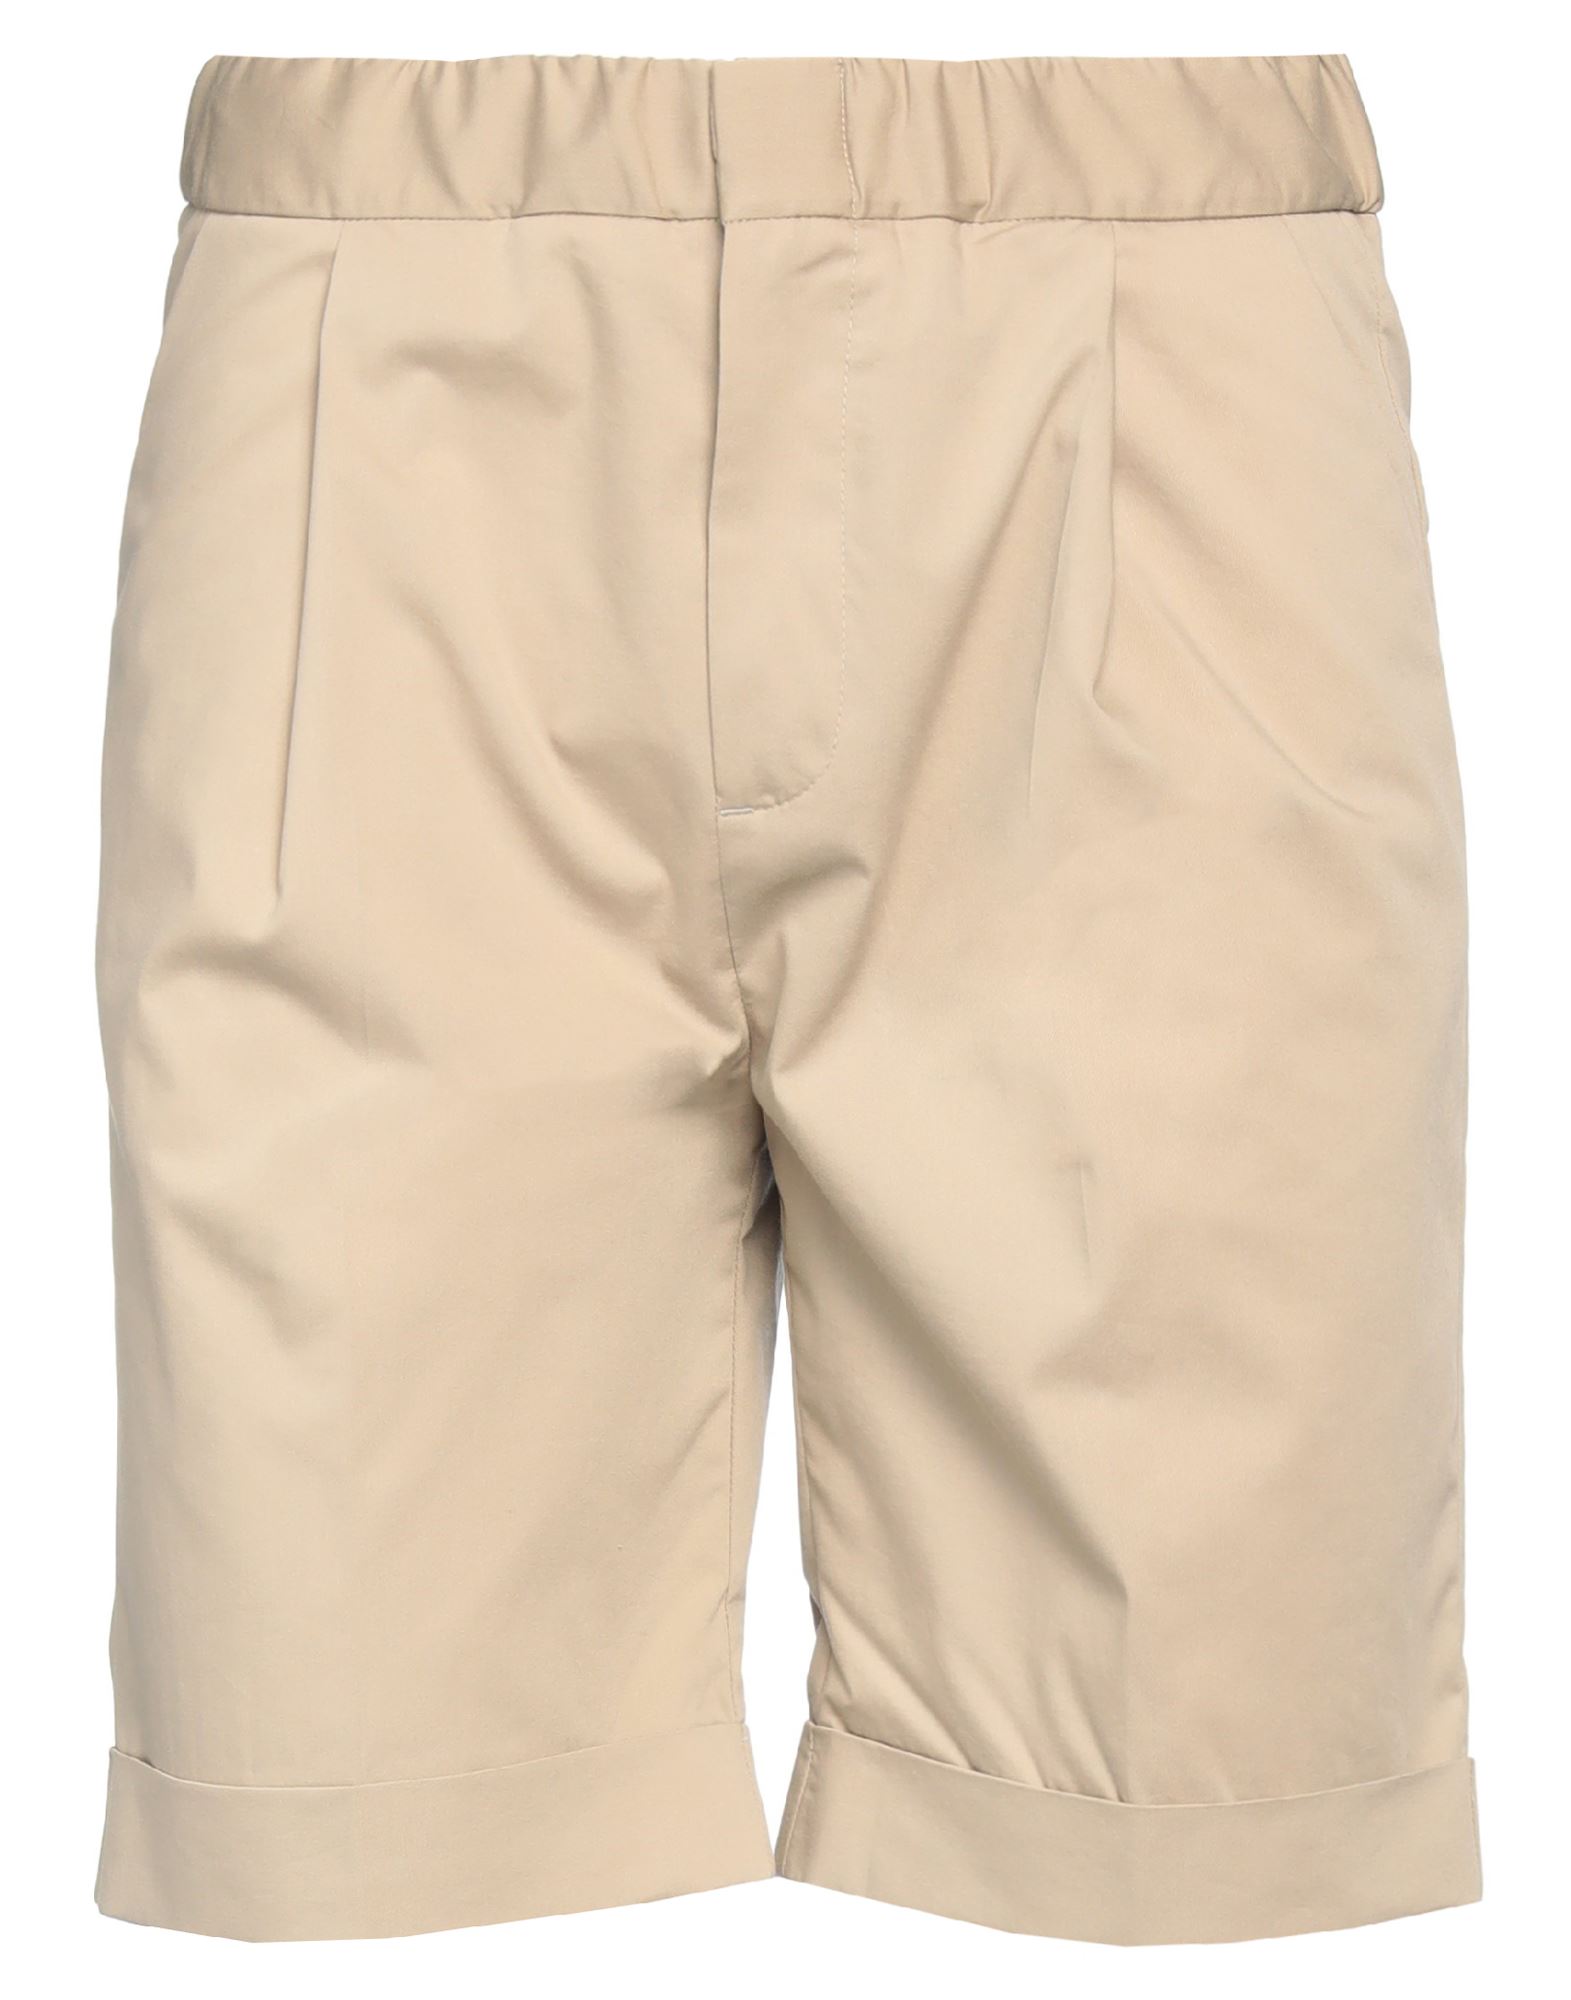 Kiefermann Man Shorts & Bermuda Shorts Sand Size M Cotton, Polyester, Elastane In Beige